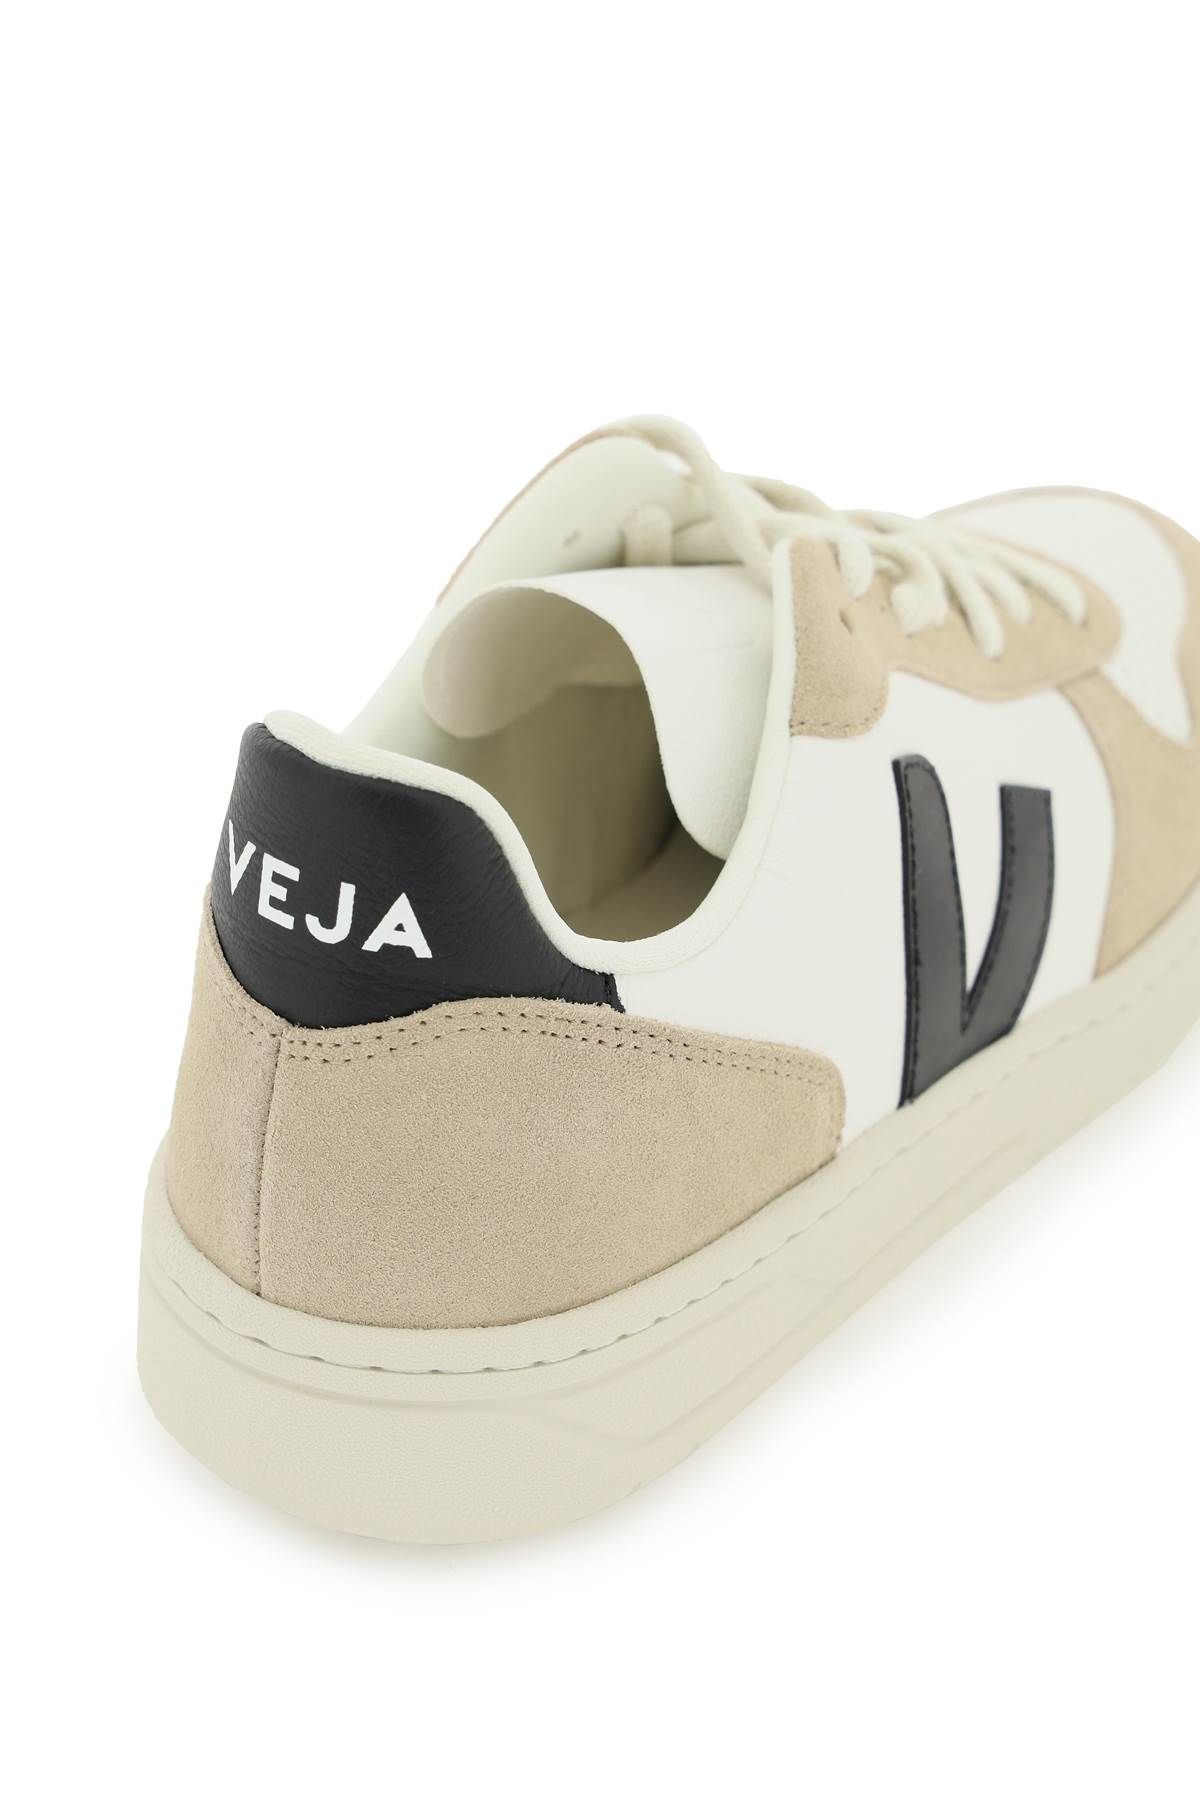 Shop Veja V-10 Suede Sneakers In Beige